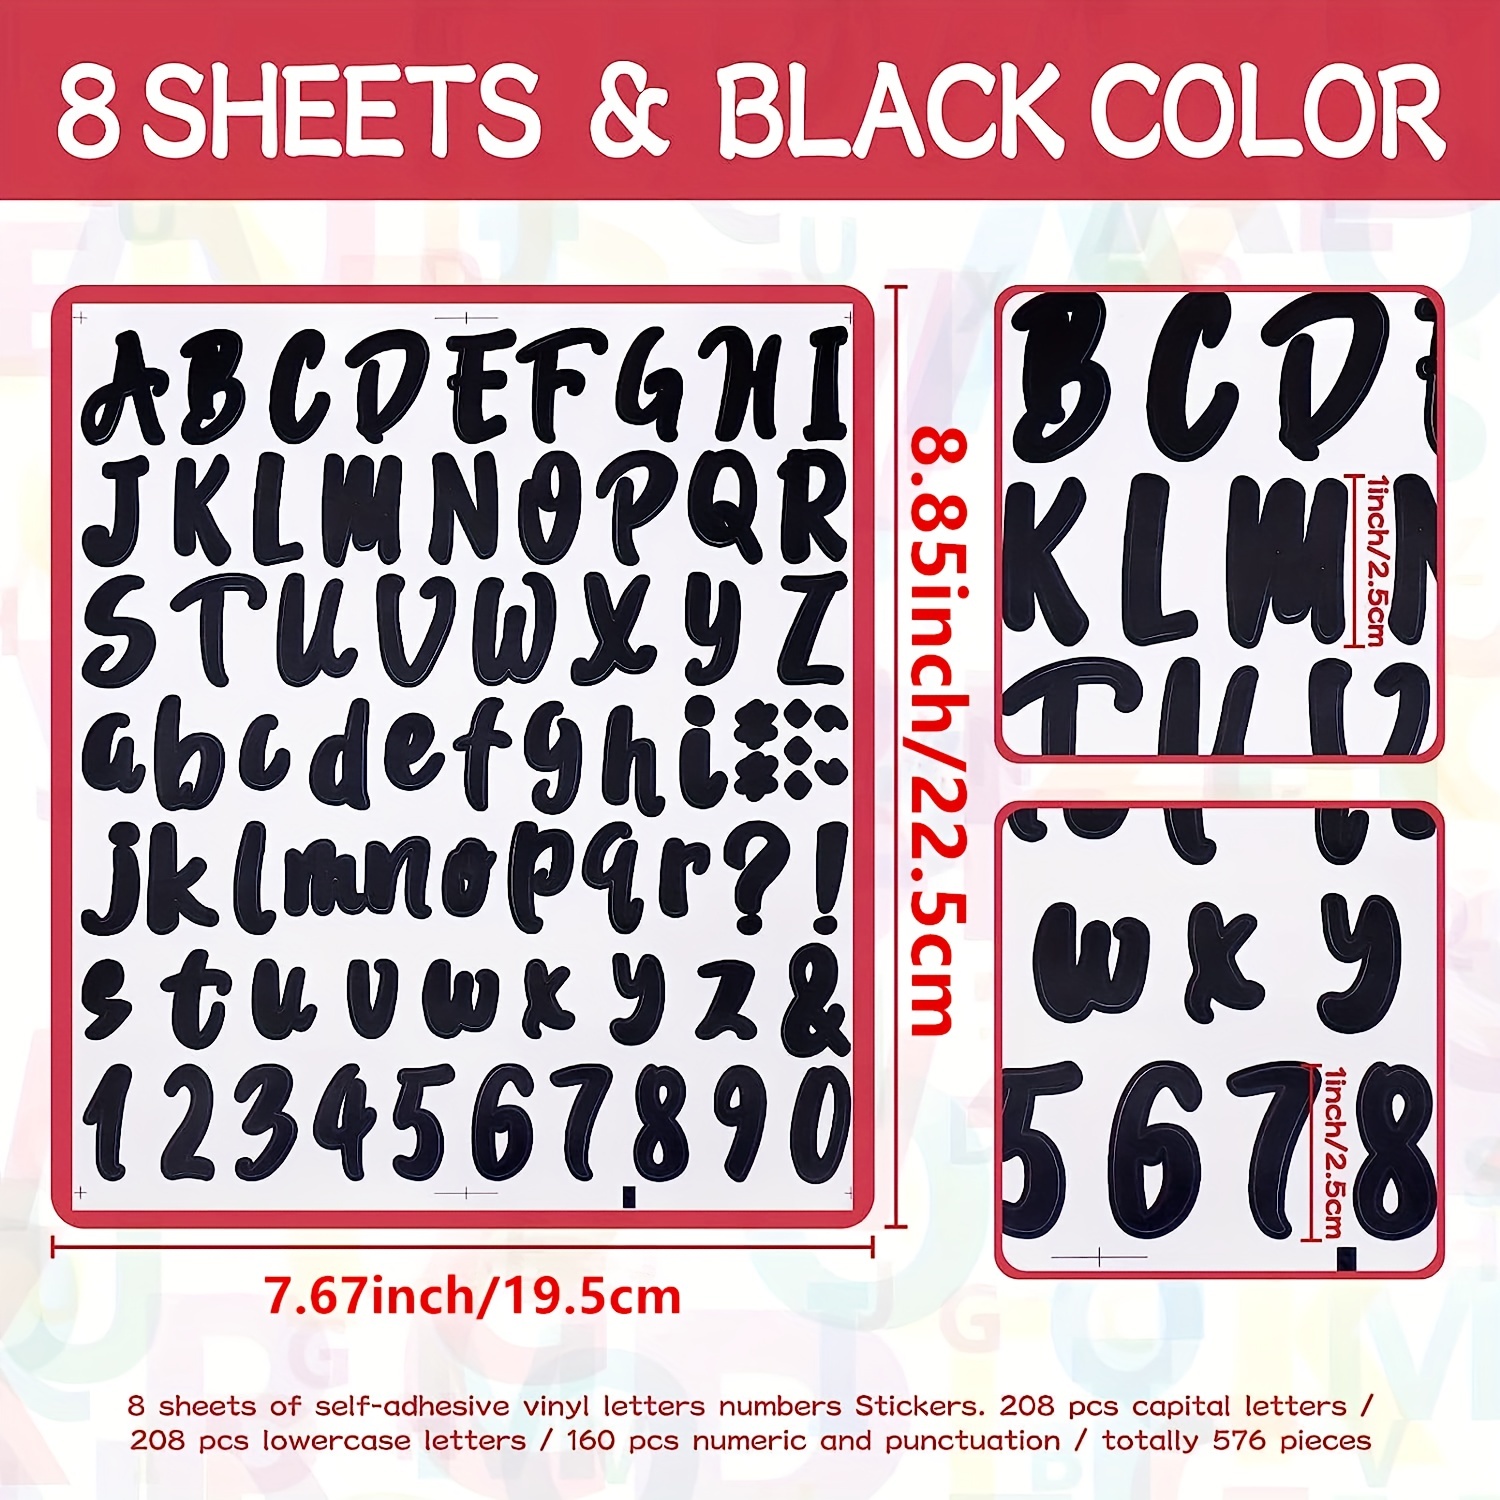 1 Inch Self Adhesive Waterproof Vinyl Letter Number Stickers 8 Sheet Black